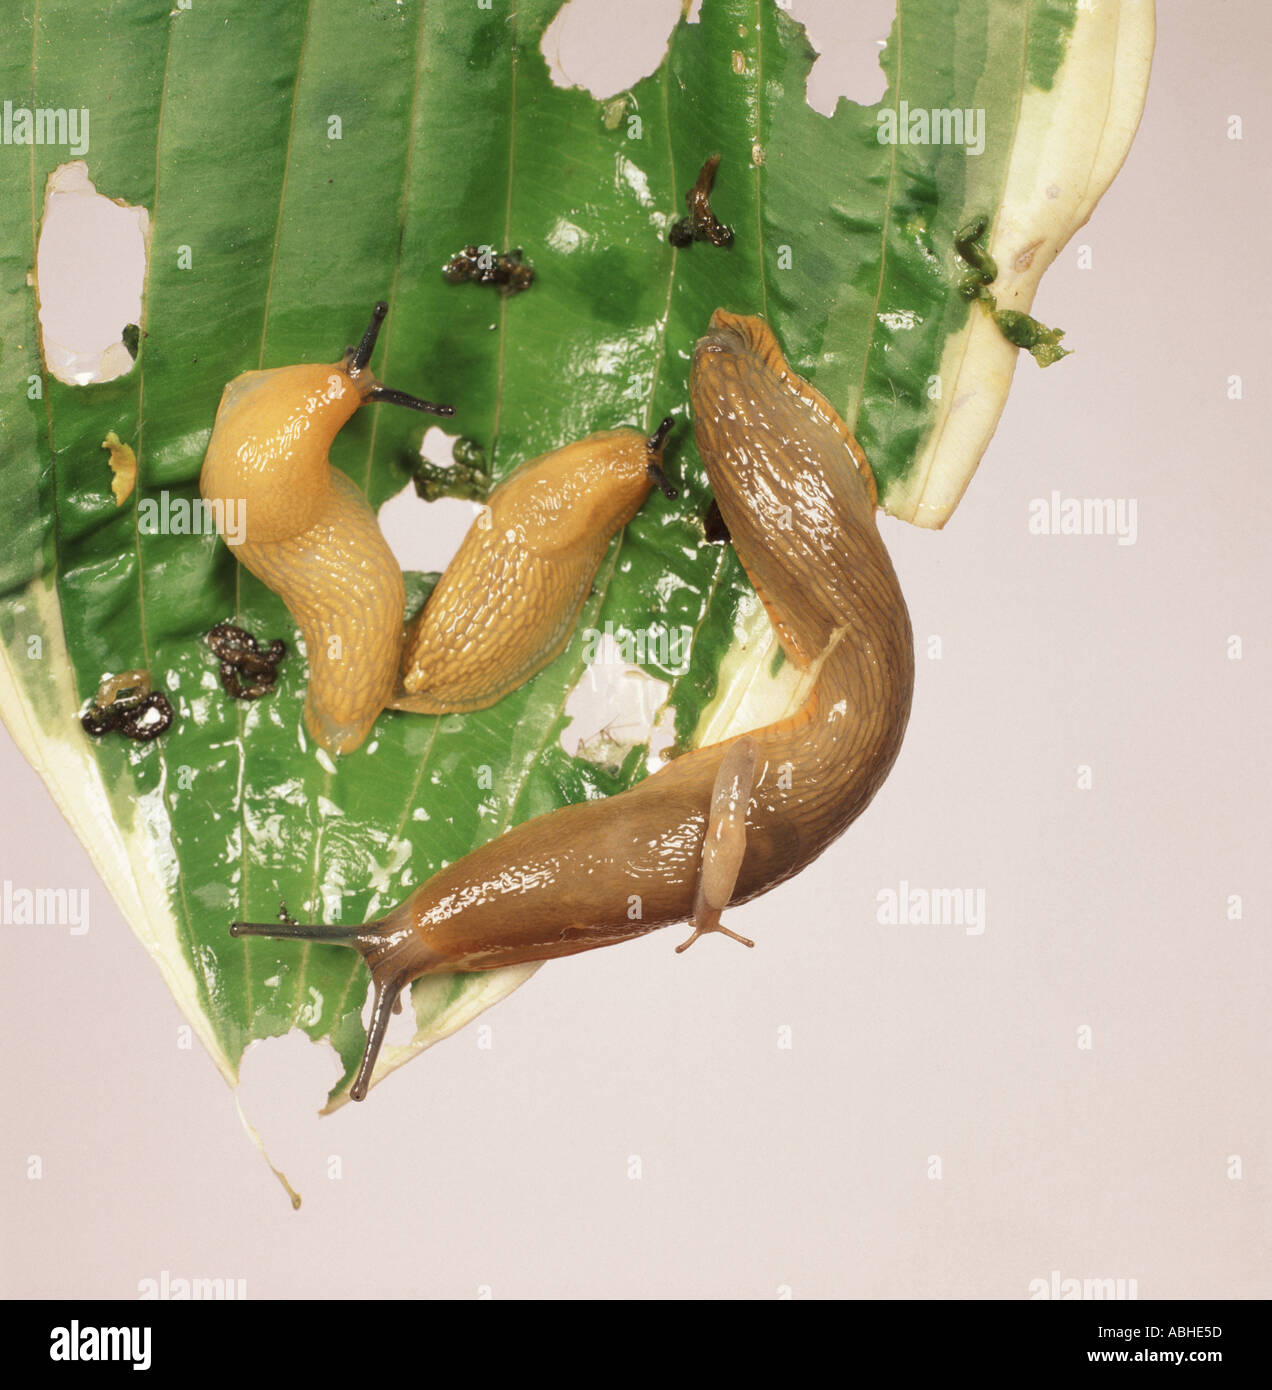 Plusieurs des limaces sur une feuille d'Hosta gravement endommagé Banque D'Images